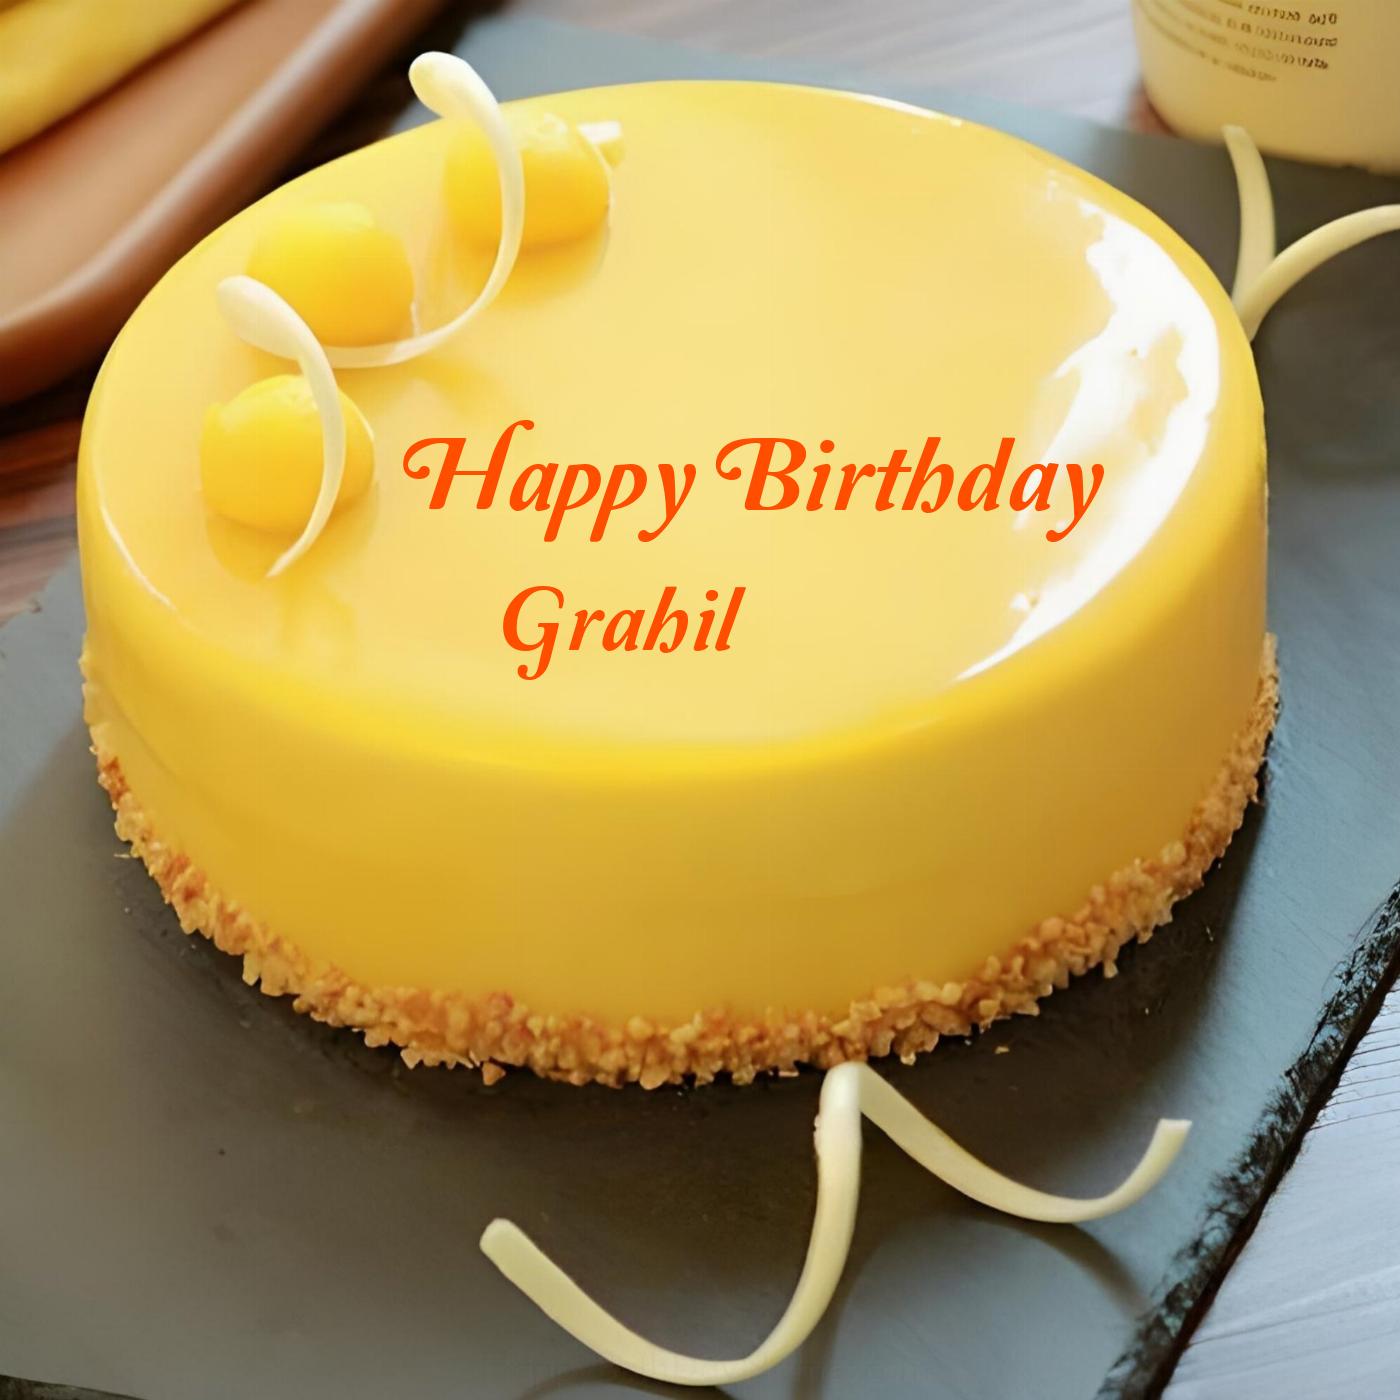 Happy Birthday Grahil Beautiful Yellow Cake